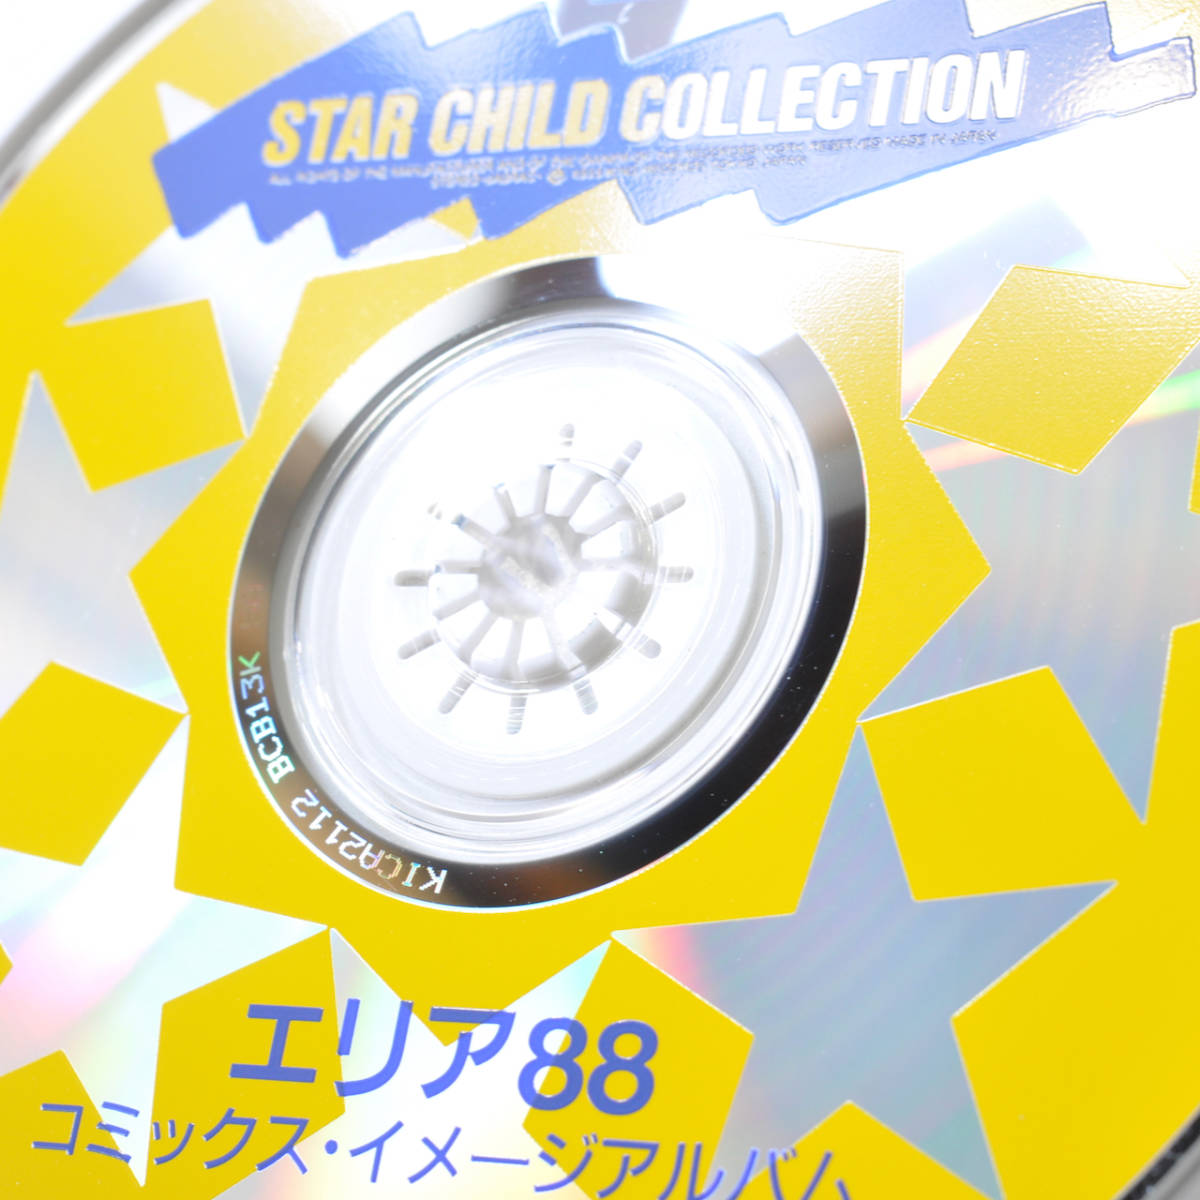 [ долгосрочное хранение |CD| б/у товар ]STAR CHILD[ комиксы * оригинал * альбом Area 88] новый рисовое поле один . новый ....AREA88 осмотр : саундтрек 